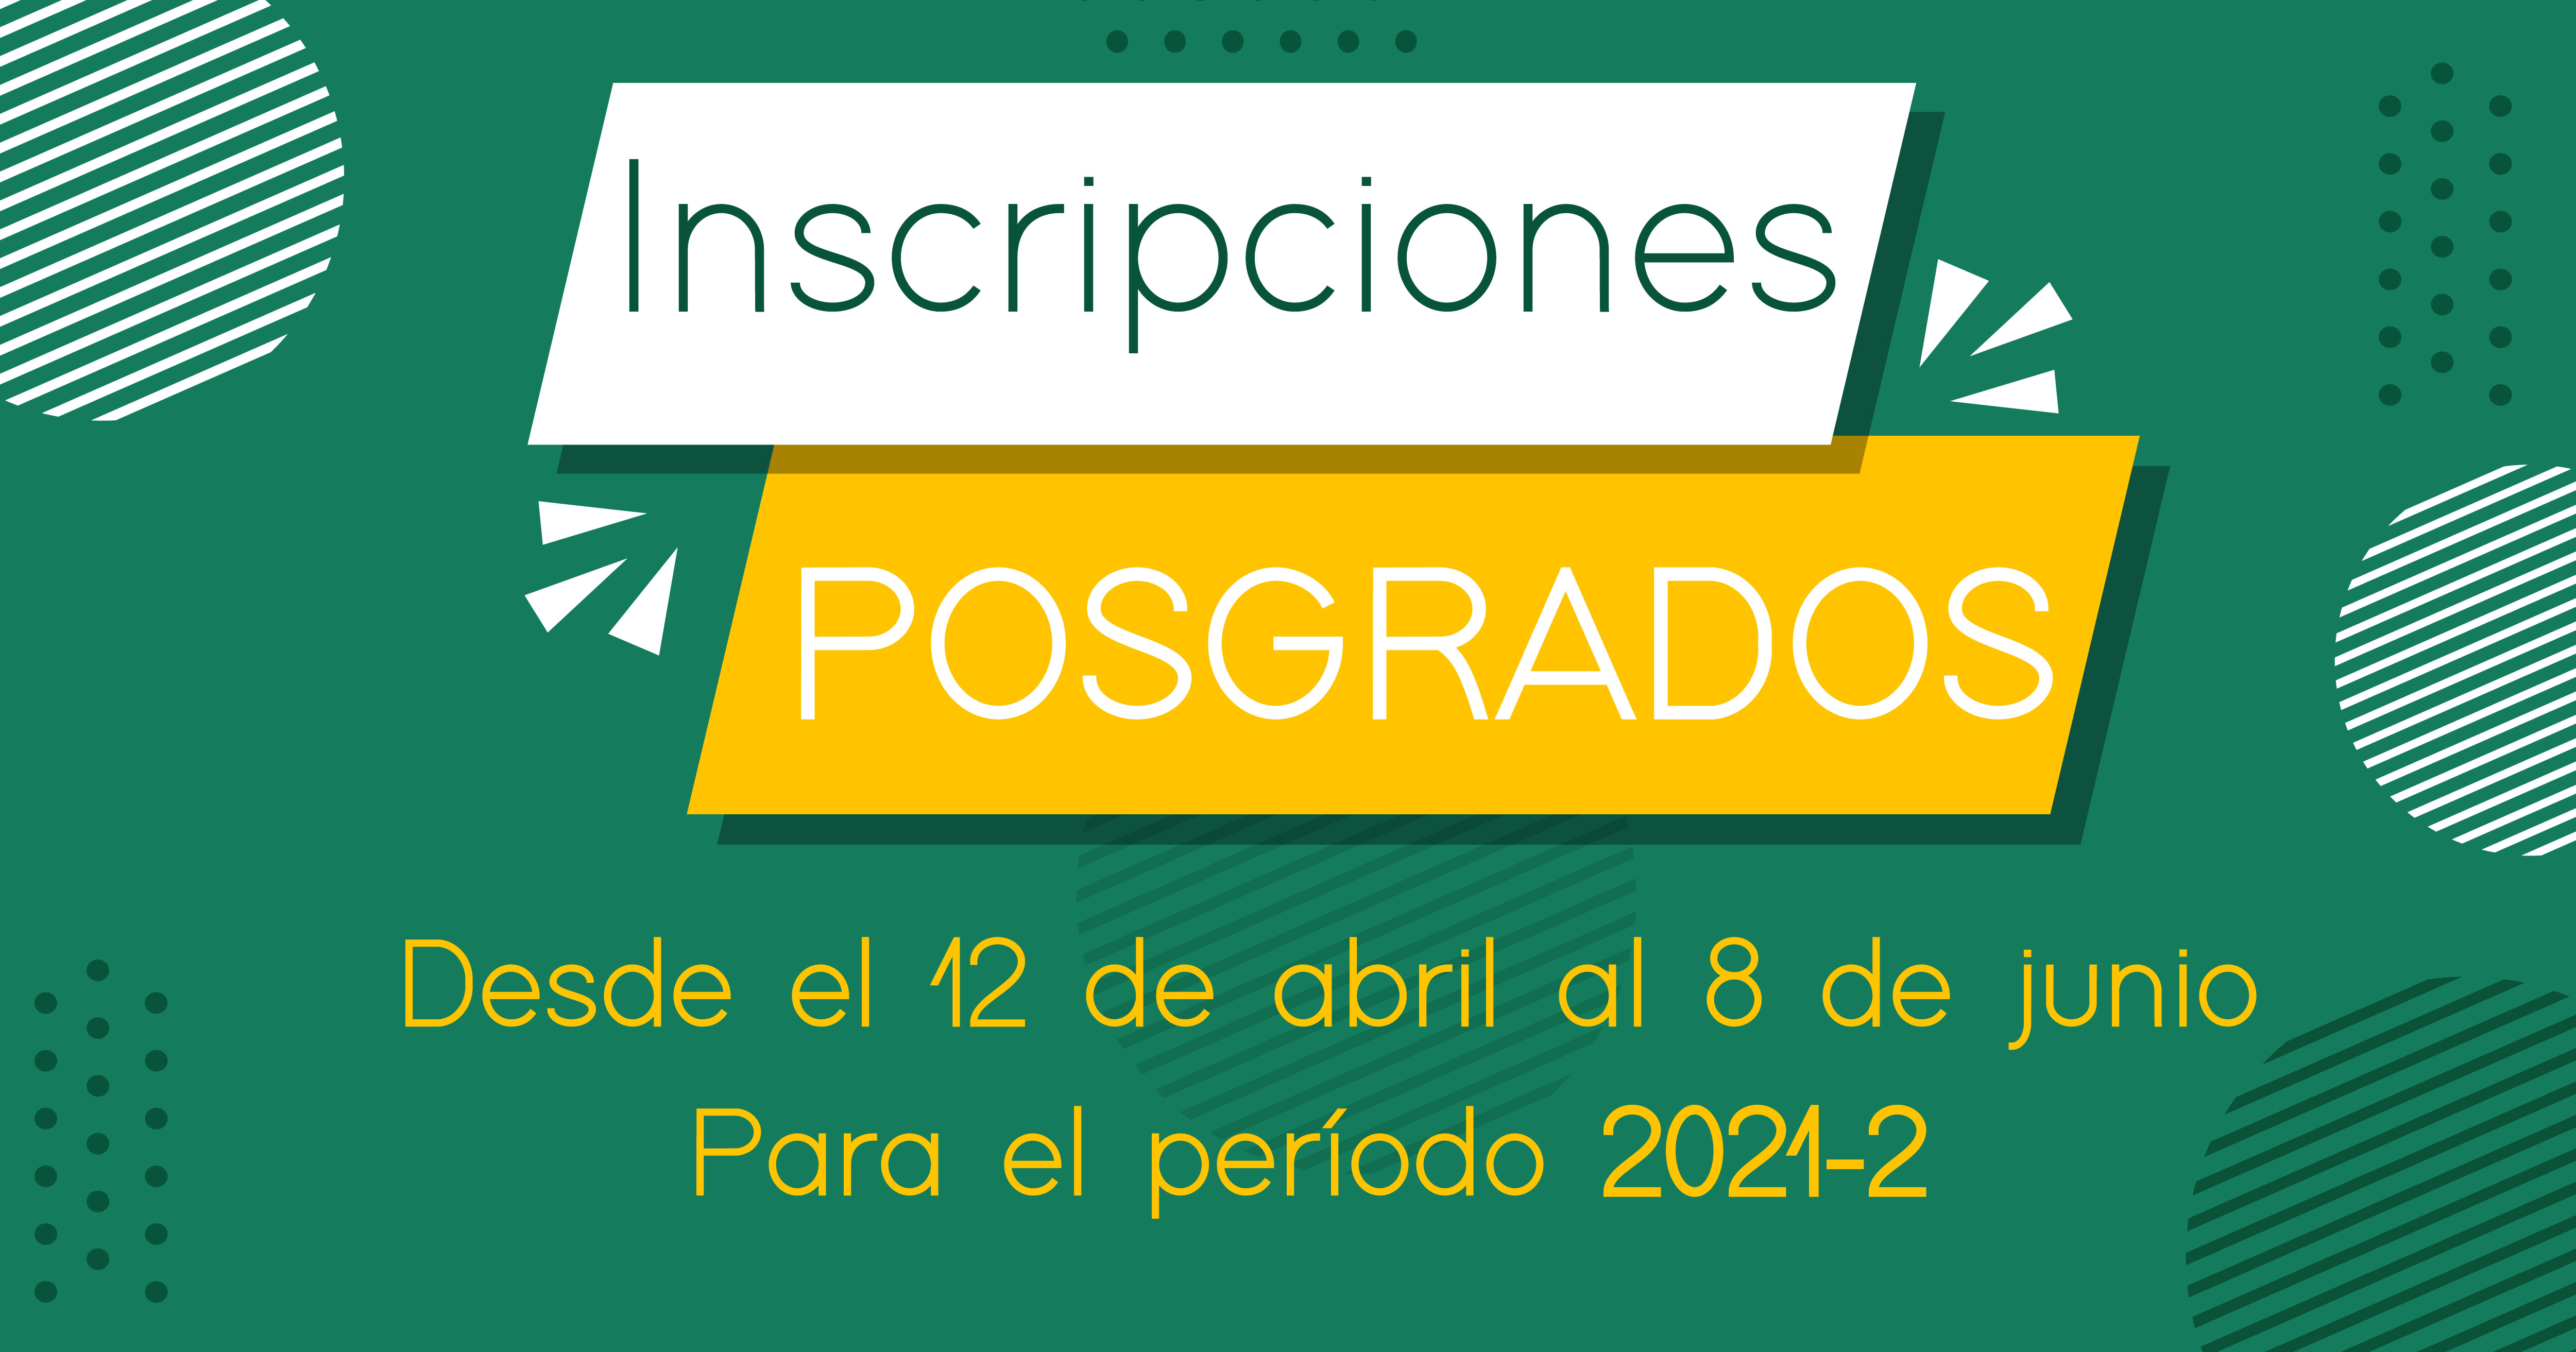 Inscripciones Posgrados 2021-2